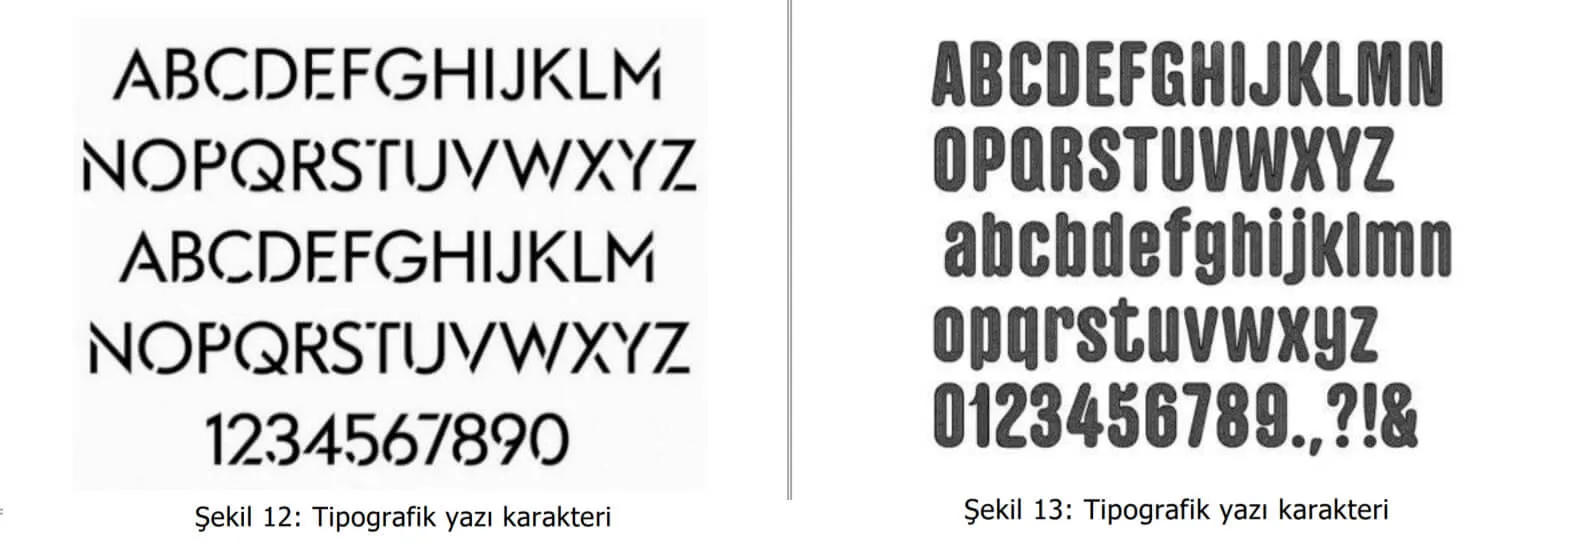 tipografik yazı karakter örnekleri-paraf web tasarım